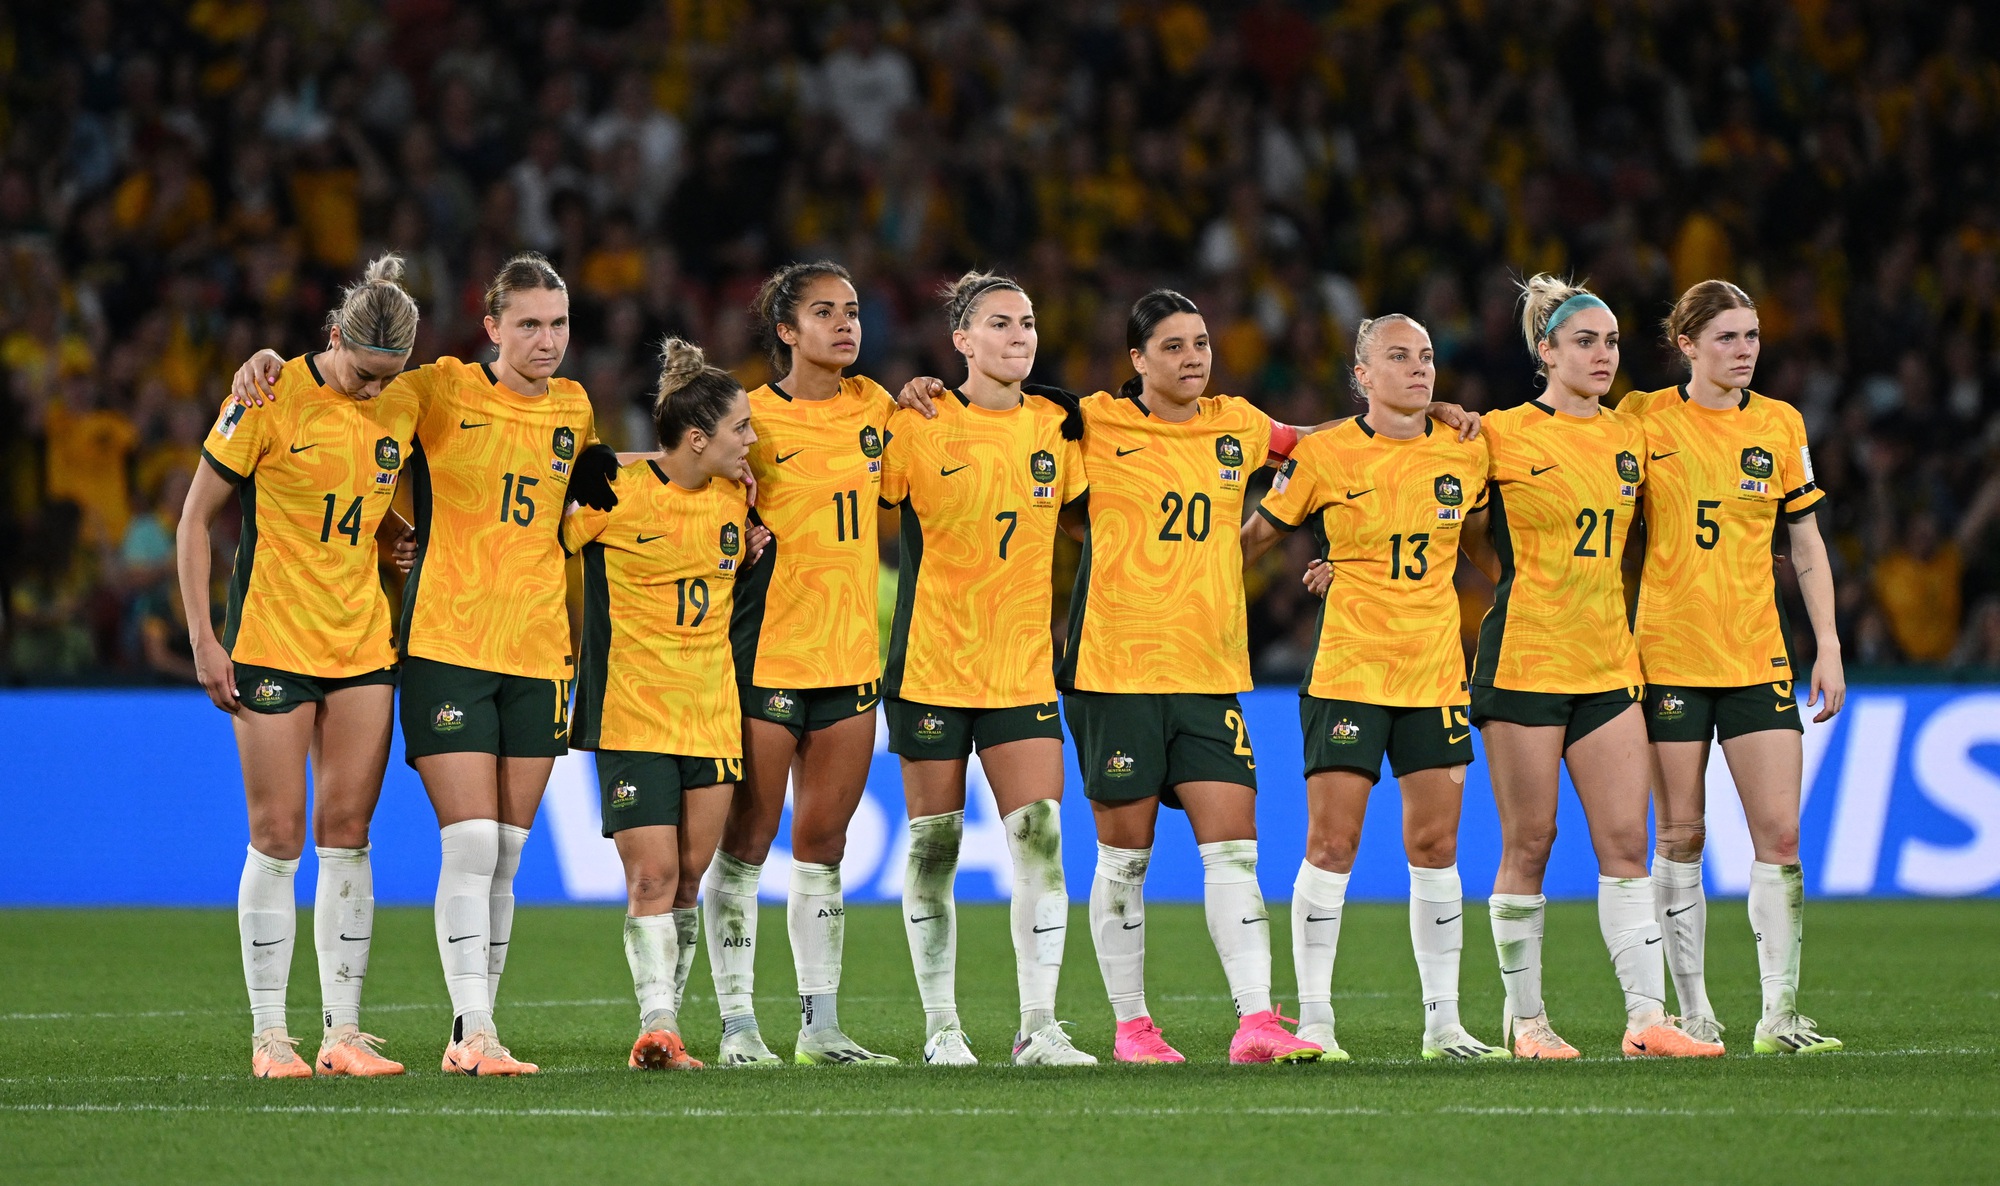 Thủ môn đội tuyển nữ Úc: “Tôi vừa thi đấu trận điên rồ nhất trong sự nghiệp” - Ảnh 8.